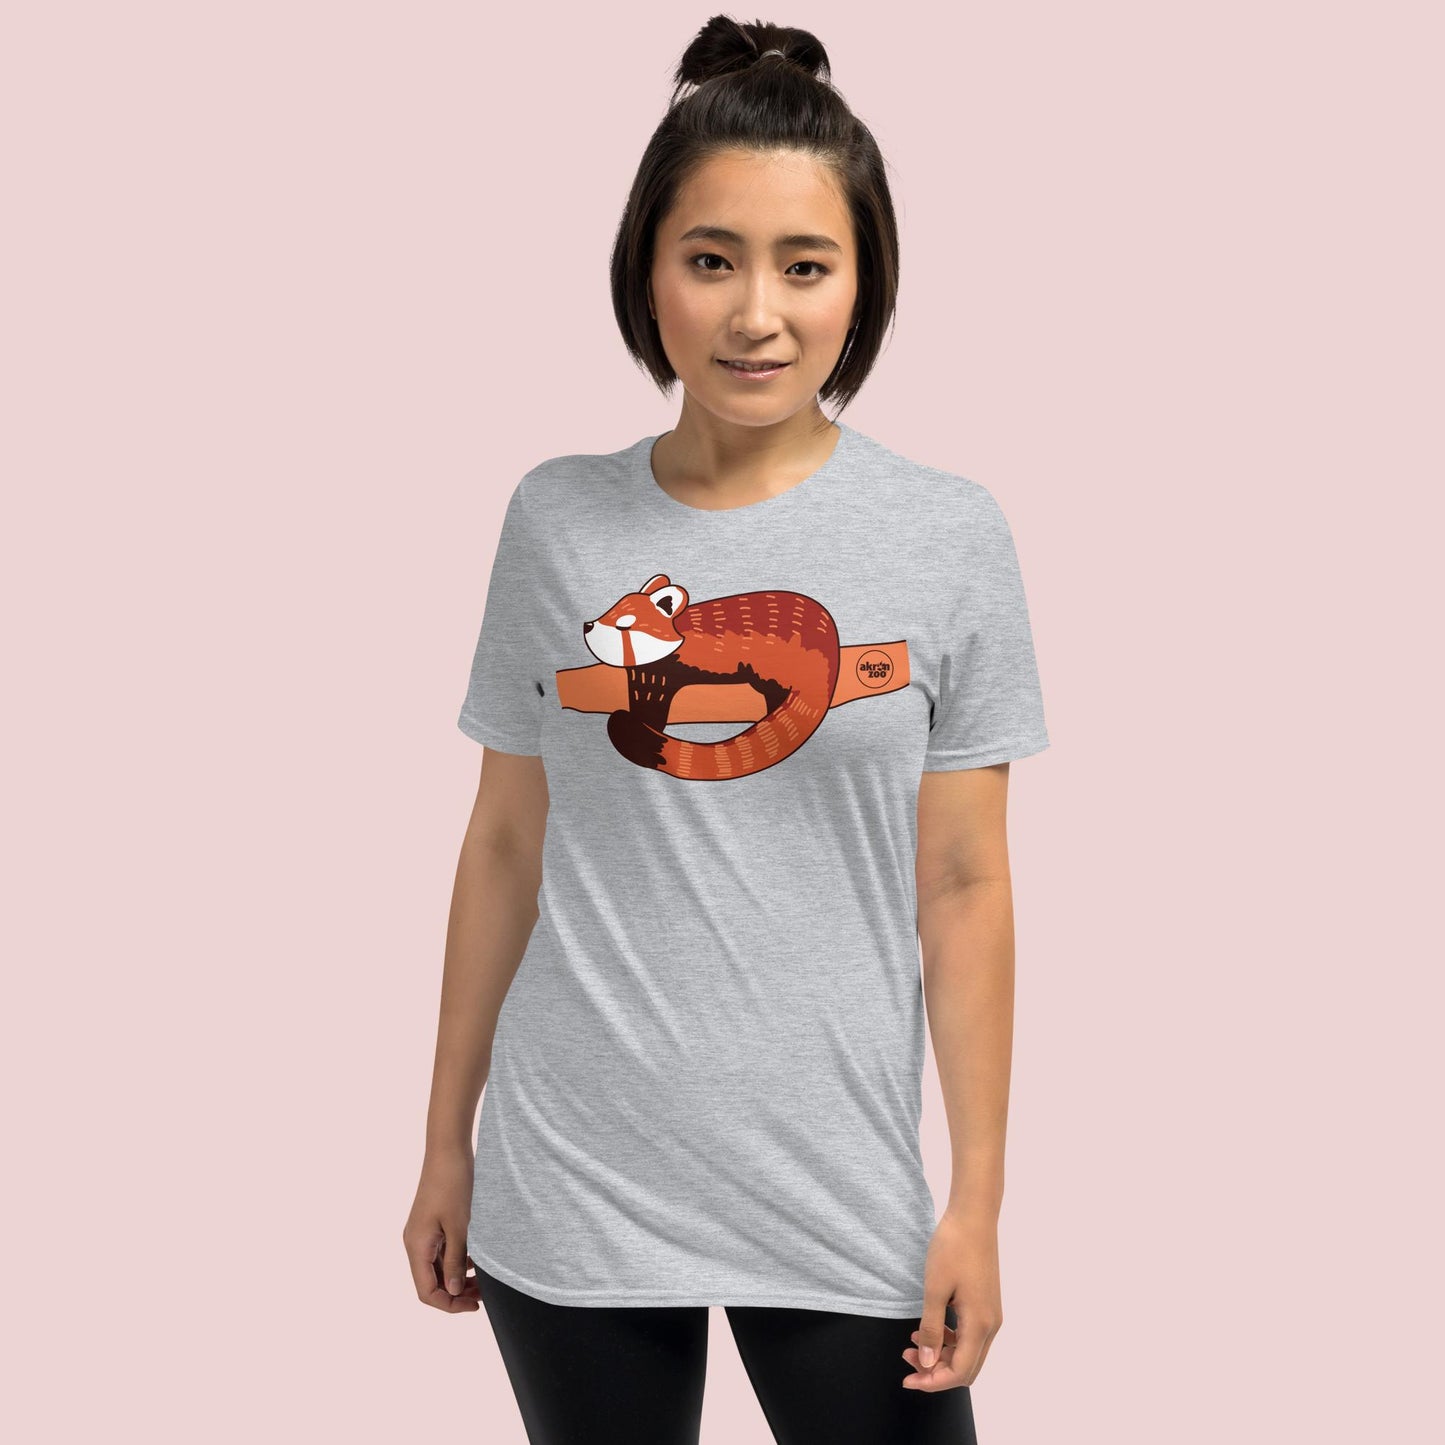 Lazy Red Panda - Short-Sleeve Unisex T-Shirt